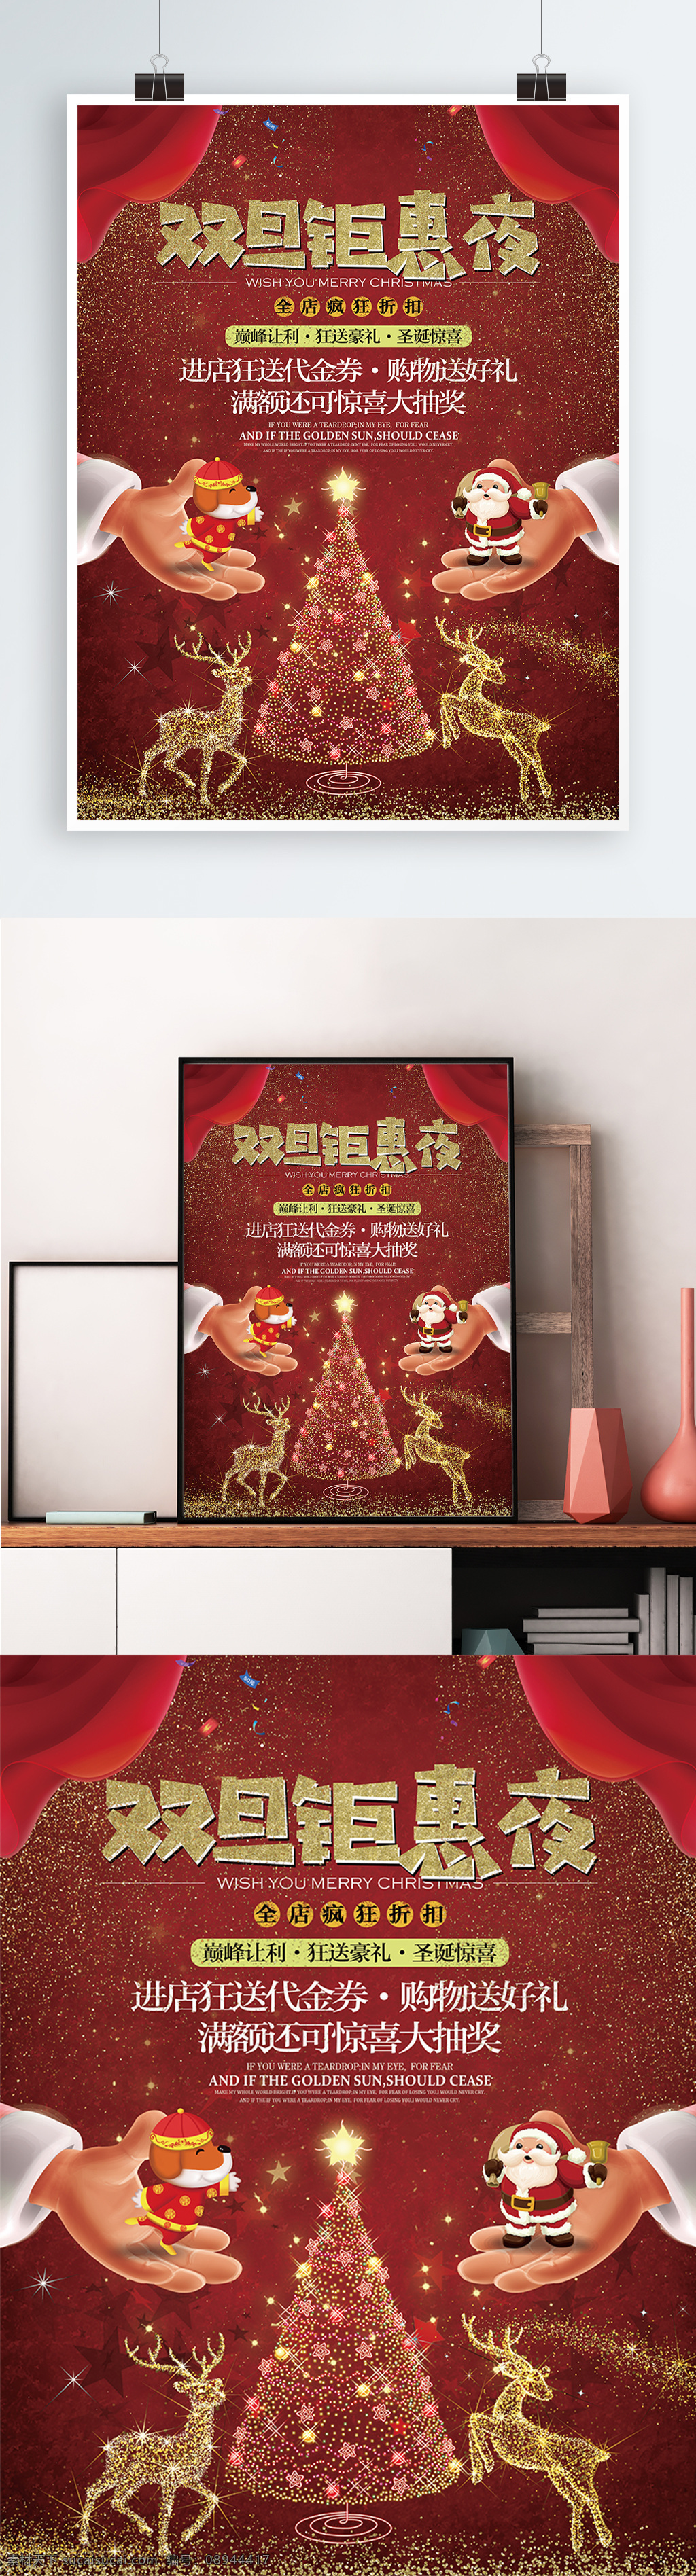 双 旦 钜 惠 喜庆 节日 宣传 促销 海报 展板 双旦 元旦 圣诞 合并 圣诞老人 圣诞树 狗年